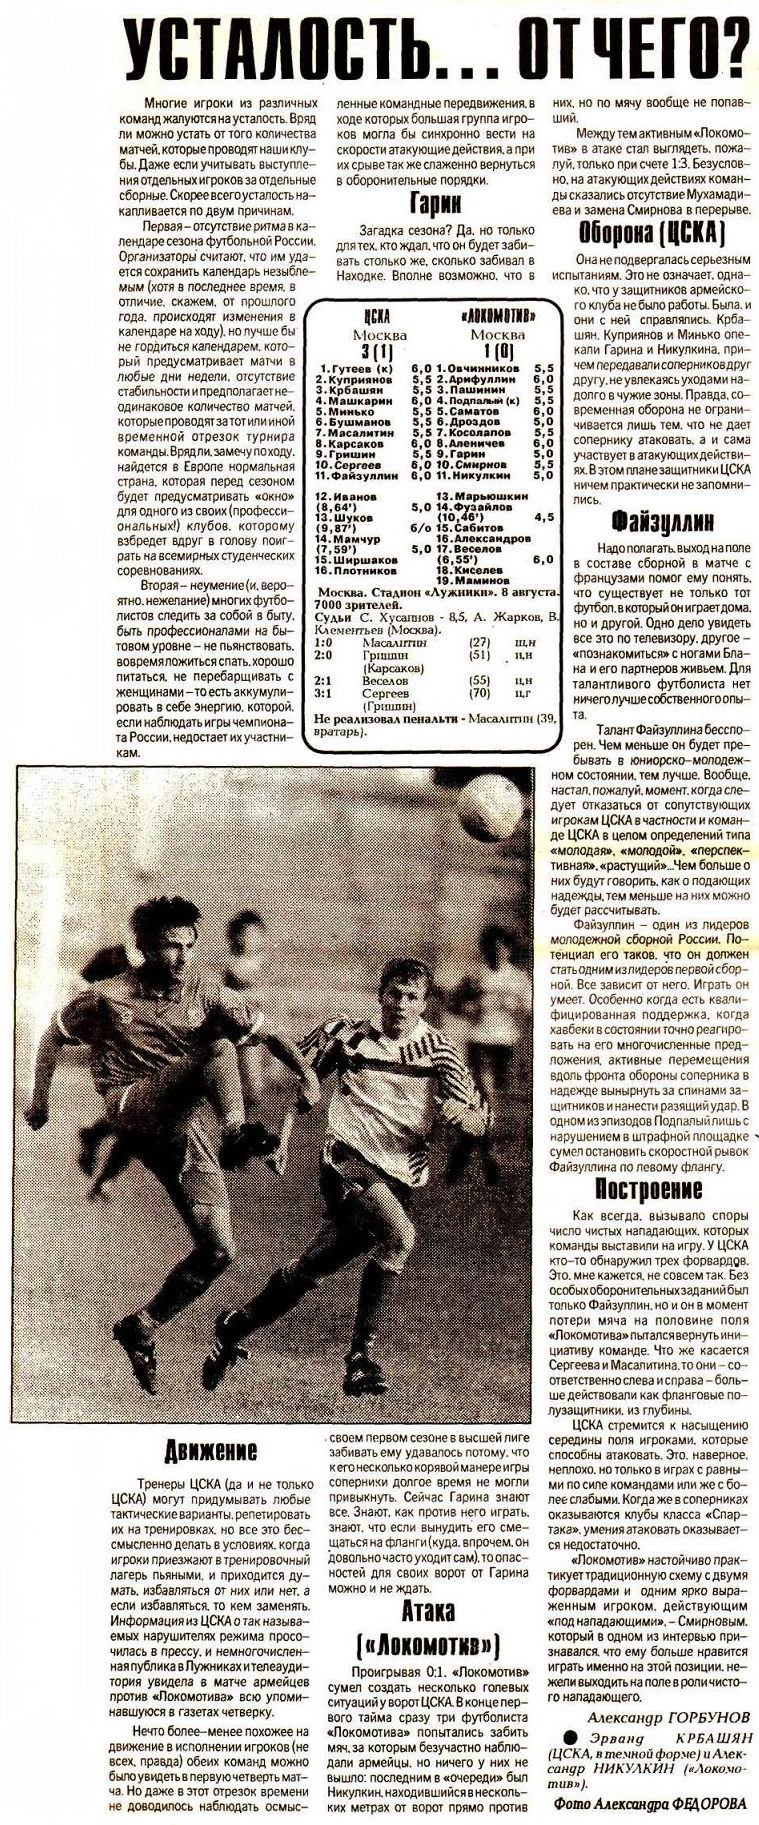 1993-08-08.CSKA-LokomotivM.1